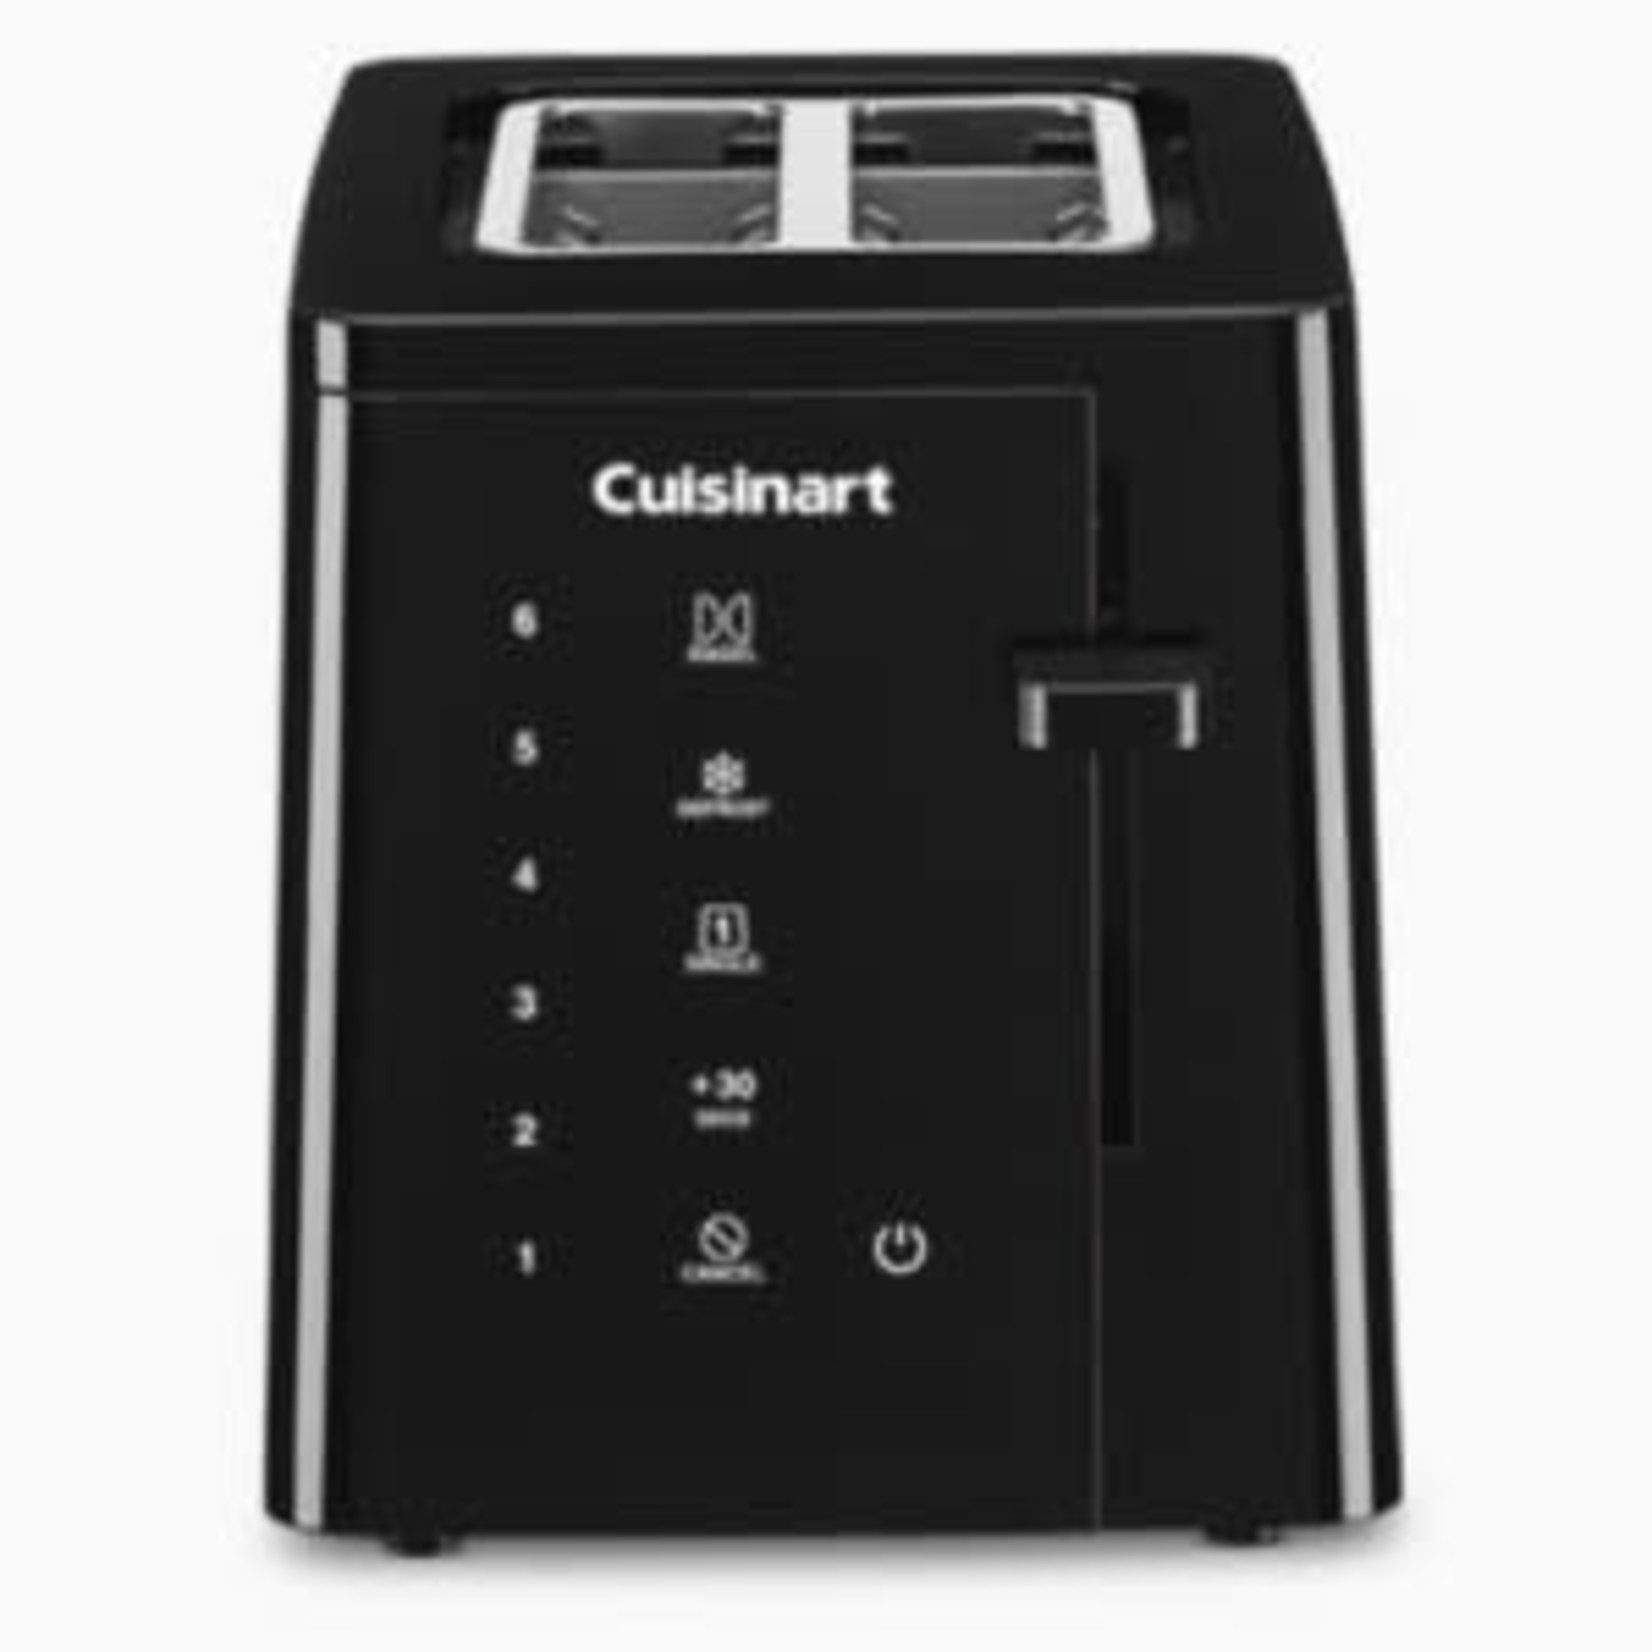 CUISINART CUISINART Touchscreen Toaster 2 Slice DNR